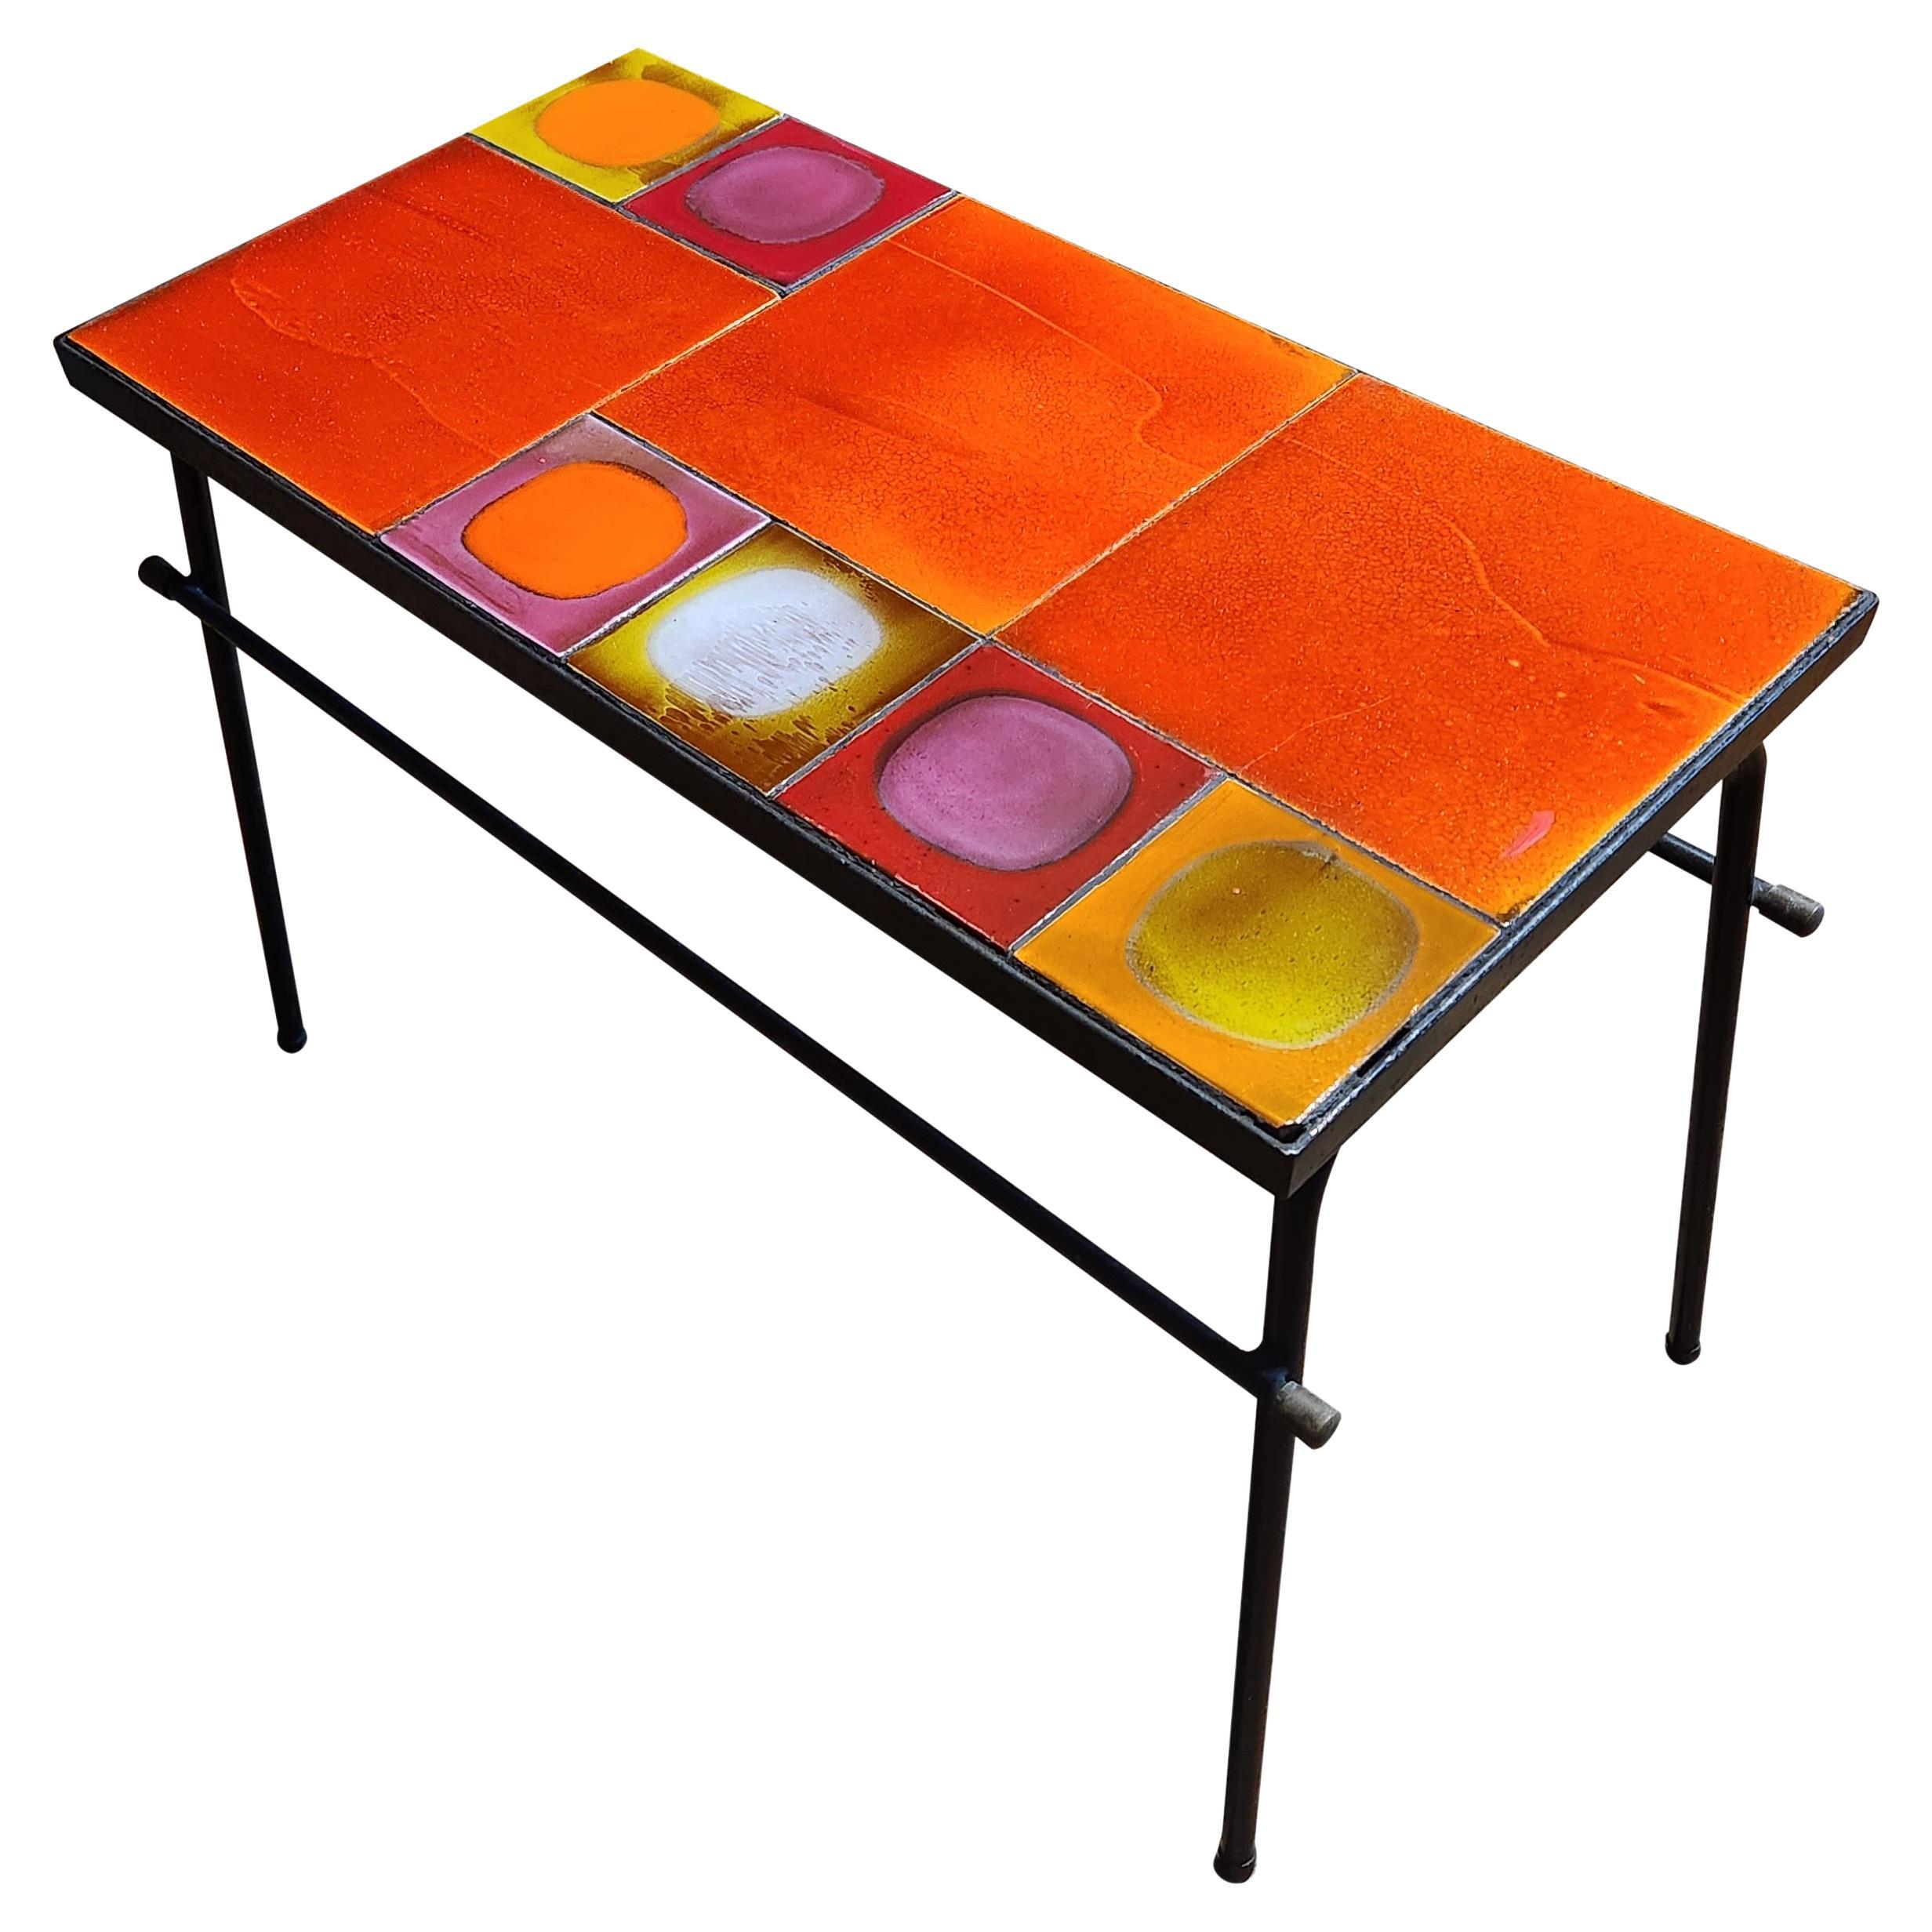 Cette table basse est composée de carreaux de céramique colorés fabriqués dans les années 1970 par Roger Capron, l'un des céramistes les plus connus de l'ère moderne.  Les carreaux les plus petits sont les carreaux 